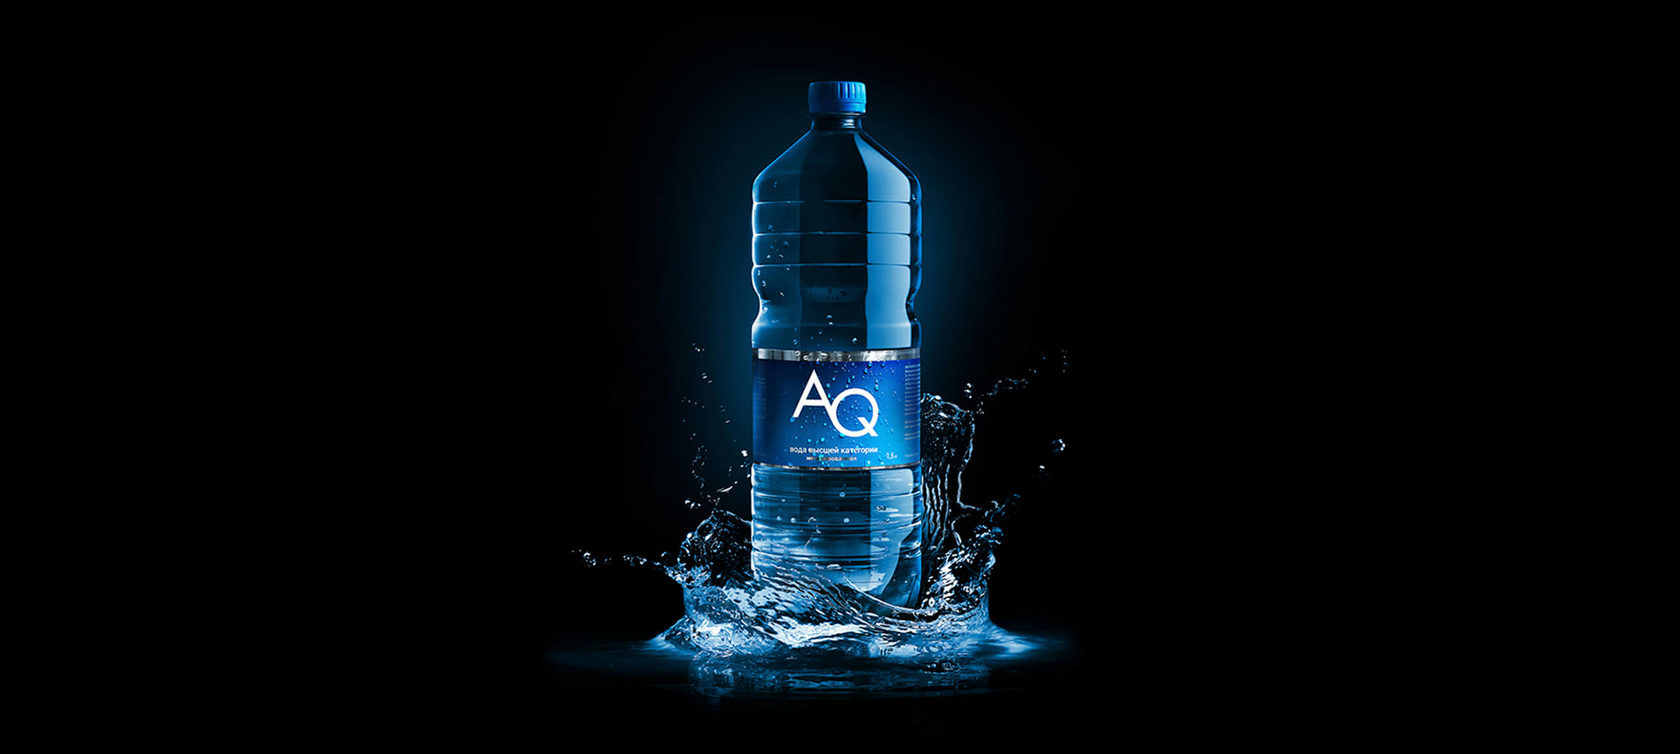 Вода выйти телефон. «Aq» аквин. Реклама питьевой воды. Вода Эстетика питьевая. Вода питьевая на темном фоне.